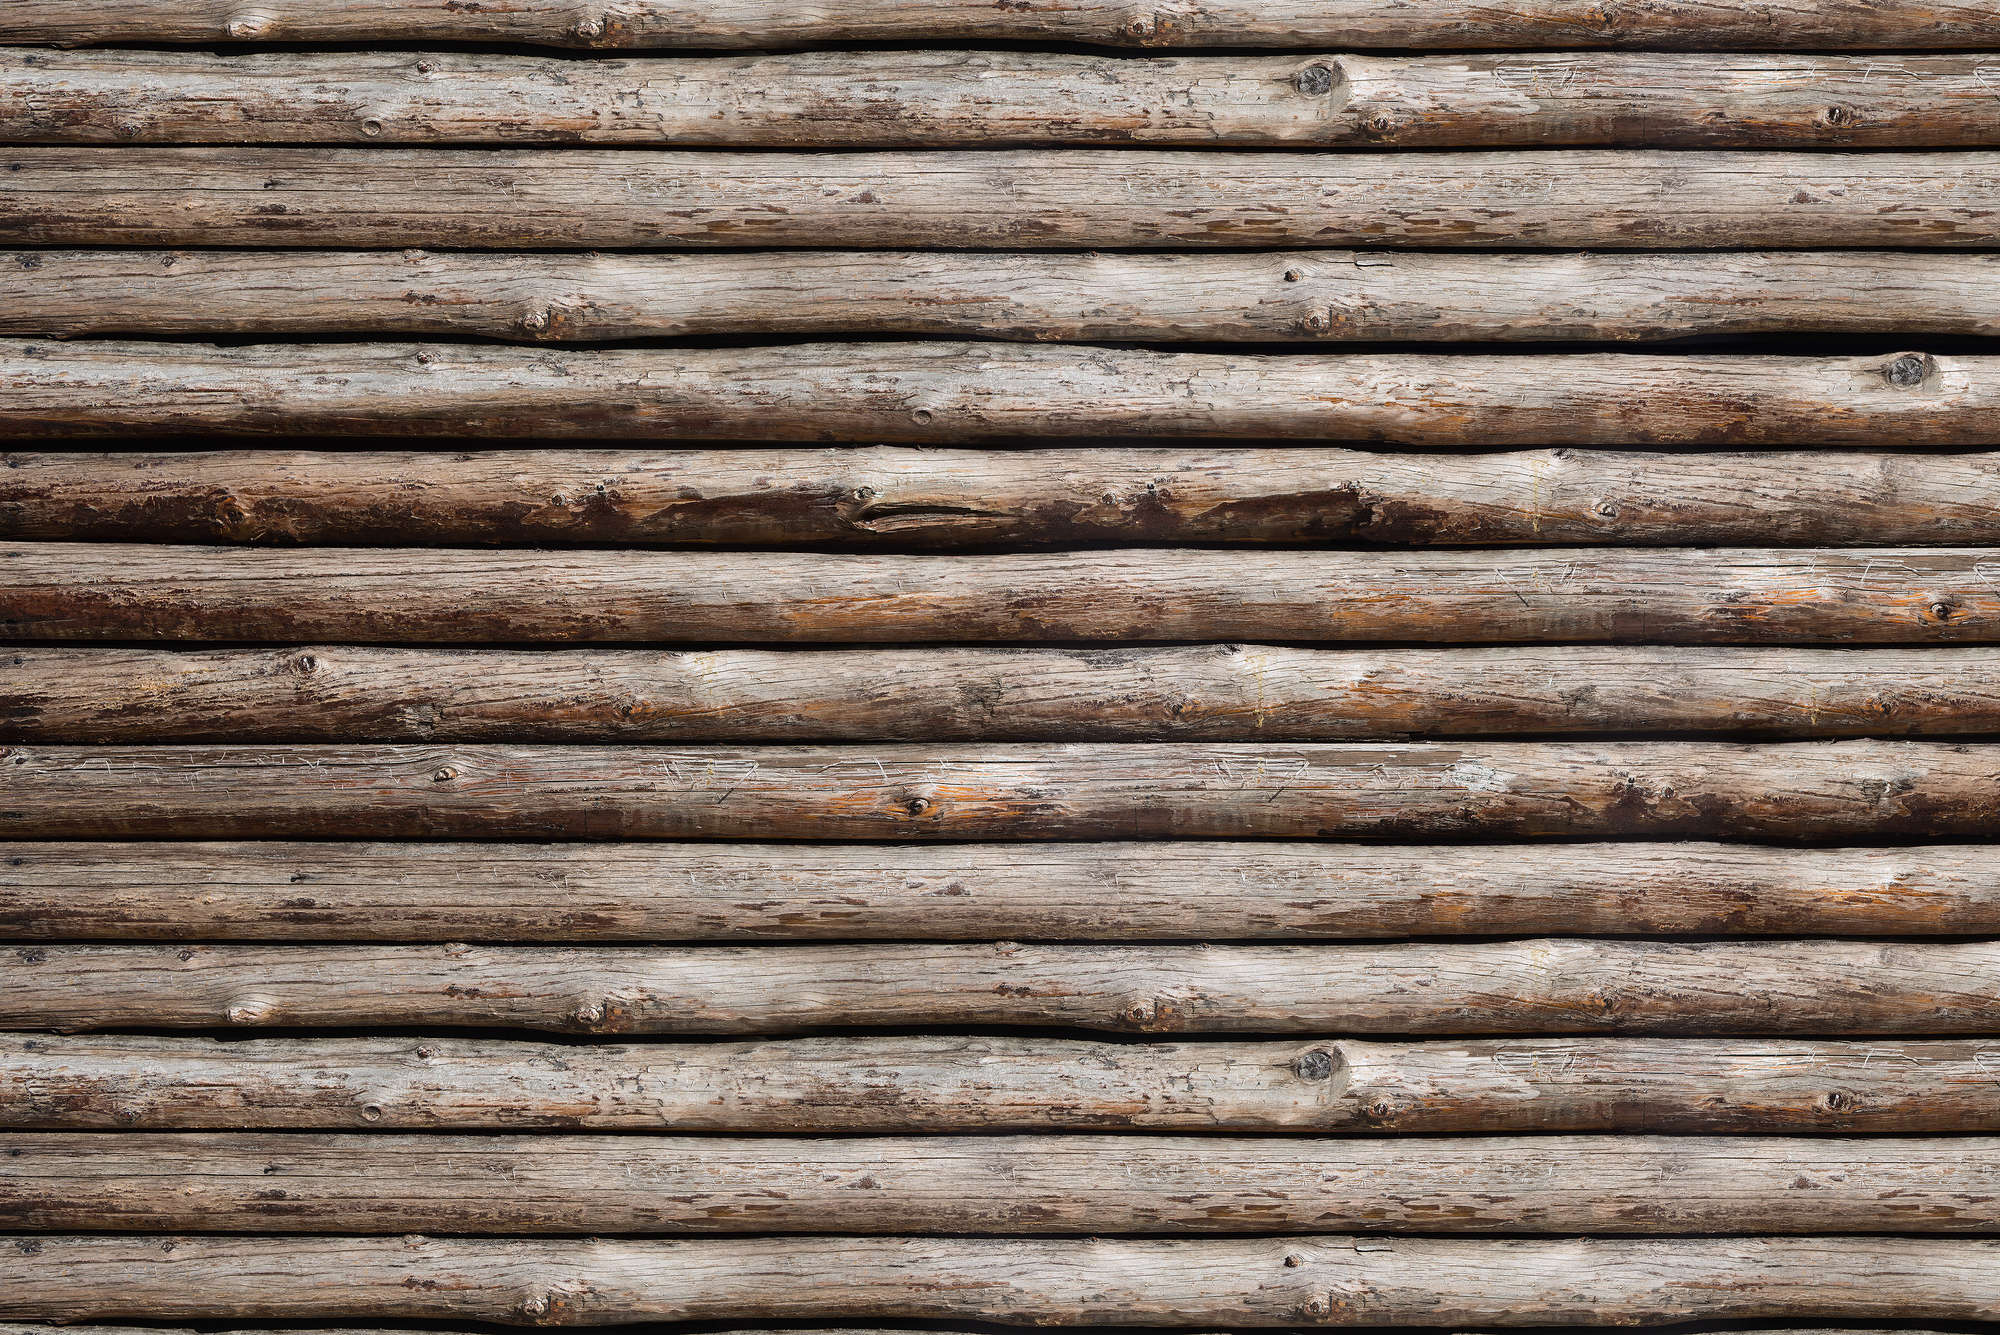             Fotomurali in legno della baita su vello madreperlato liscio
        